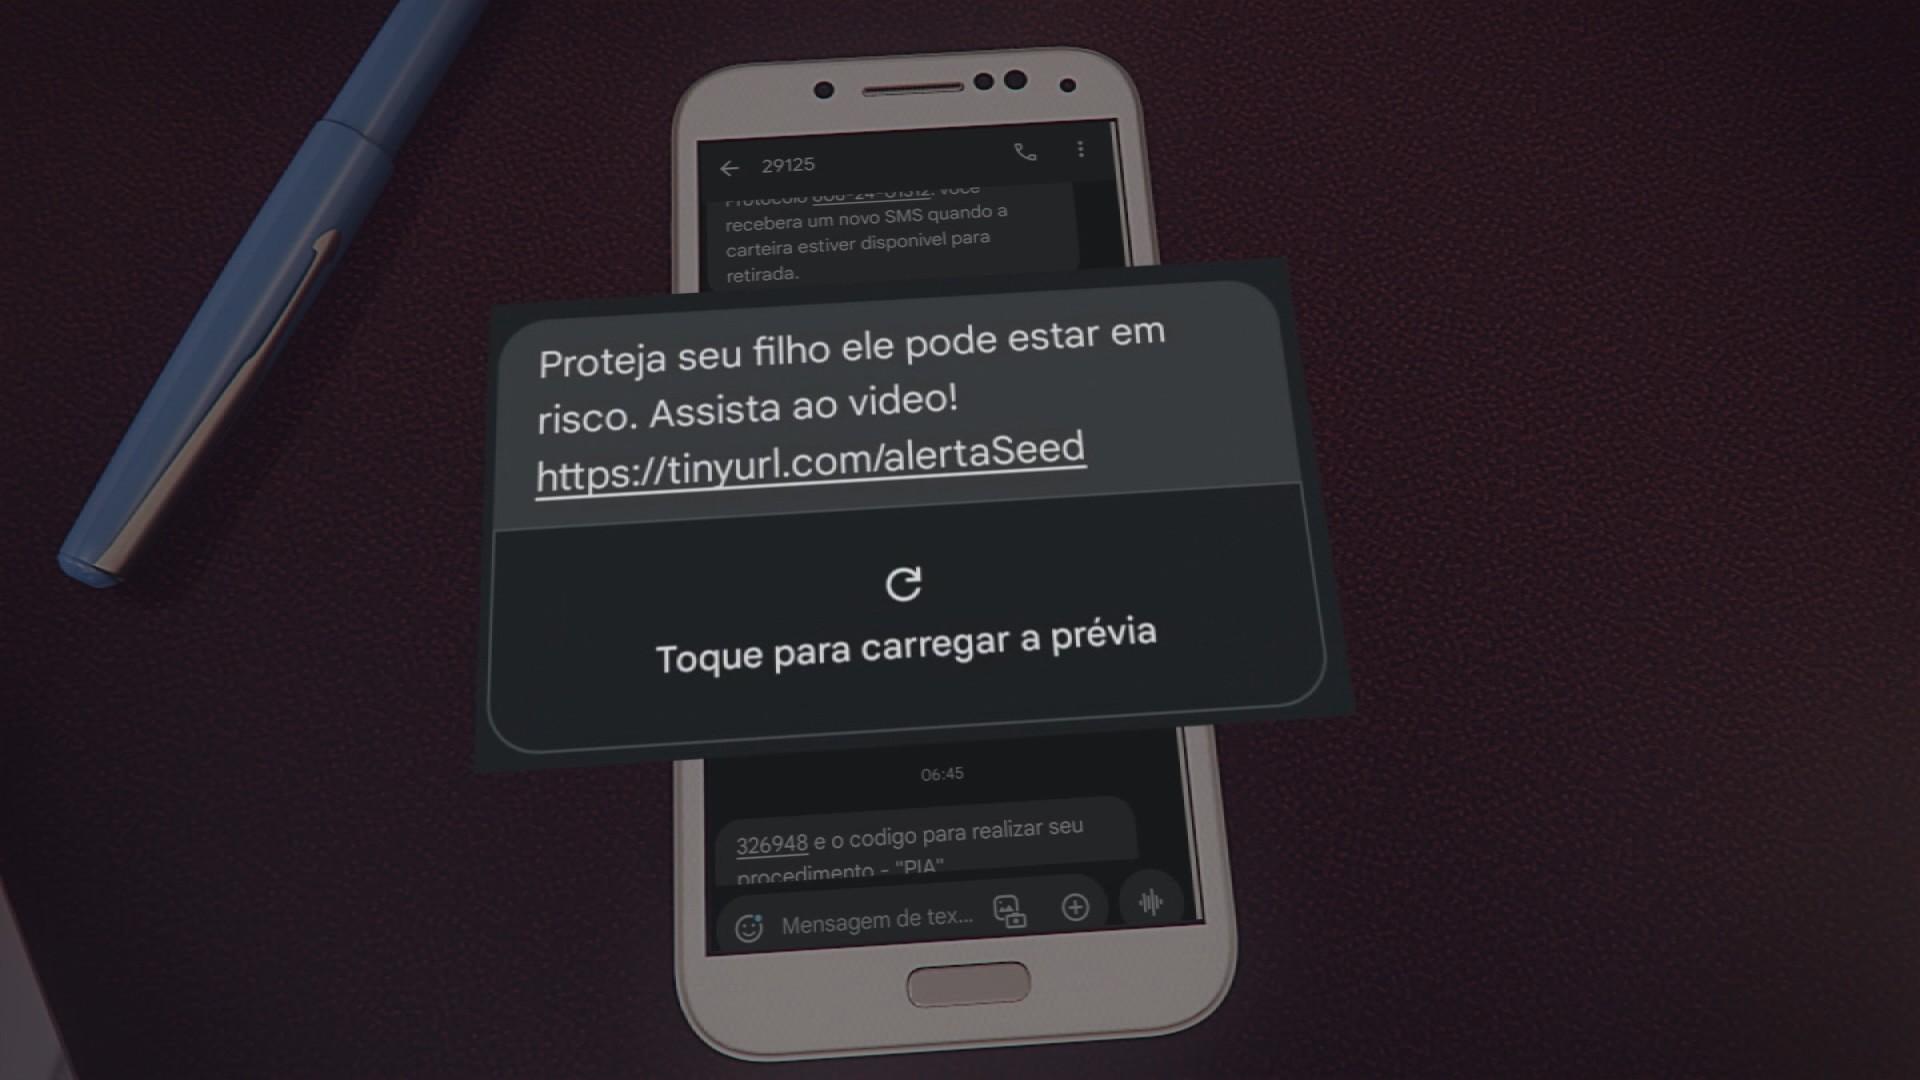 Governo do Paraná usou dados internos para enviar mensagem com vídeo contra greve de professores a pais de alunos